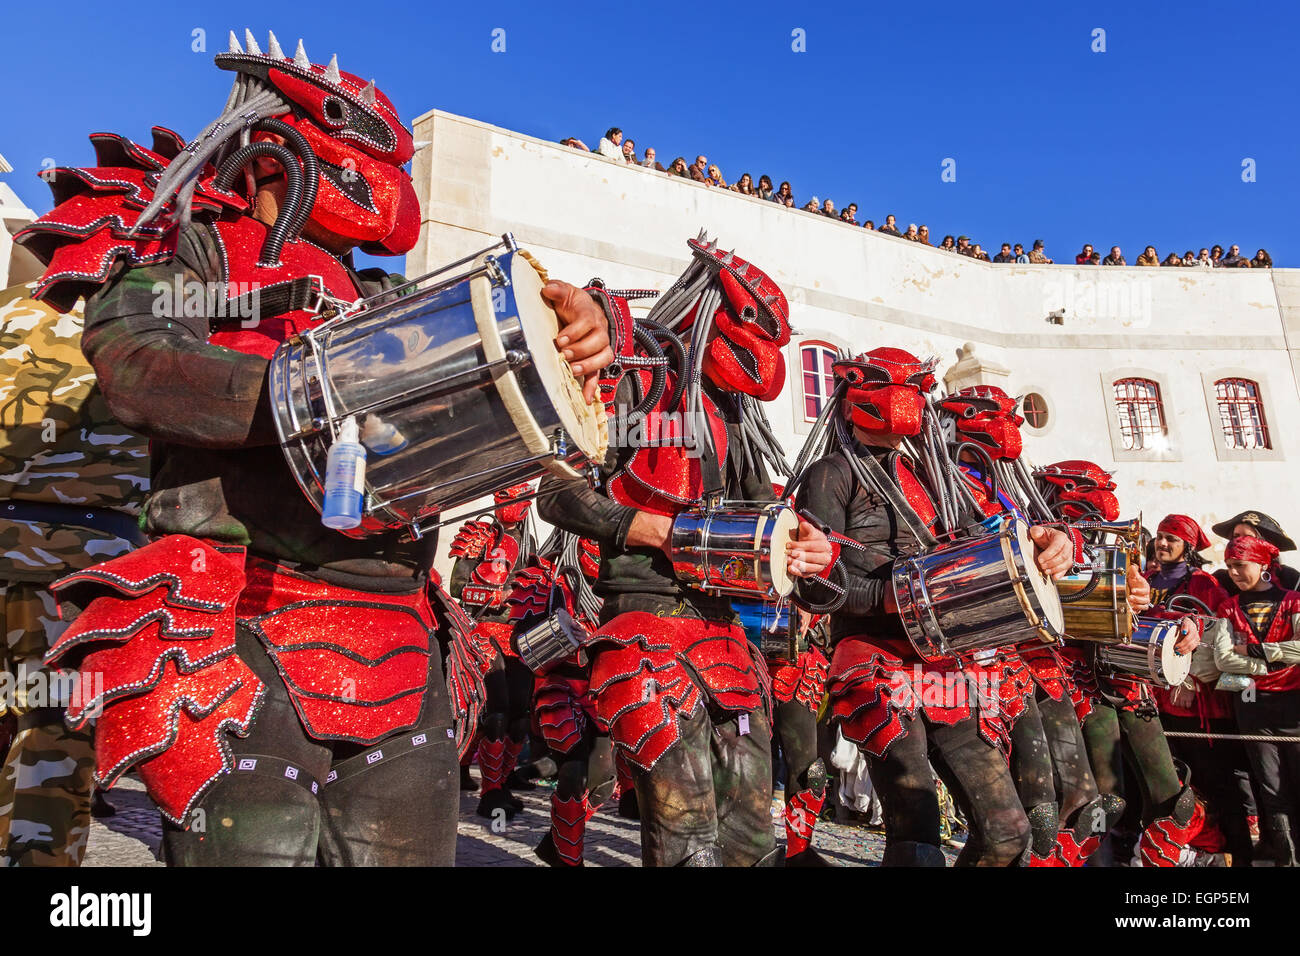 Bateria, la section musicale de l'école de samba, de jouer pour les danseurs dans le style Carnaval de Rio de Janeiro parade. Banque D'Images